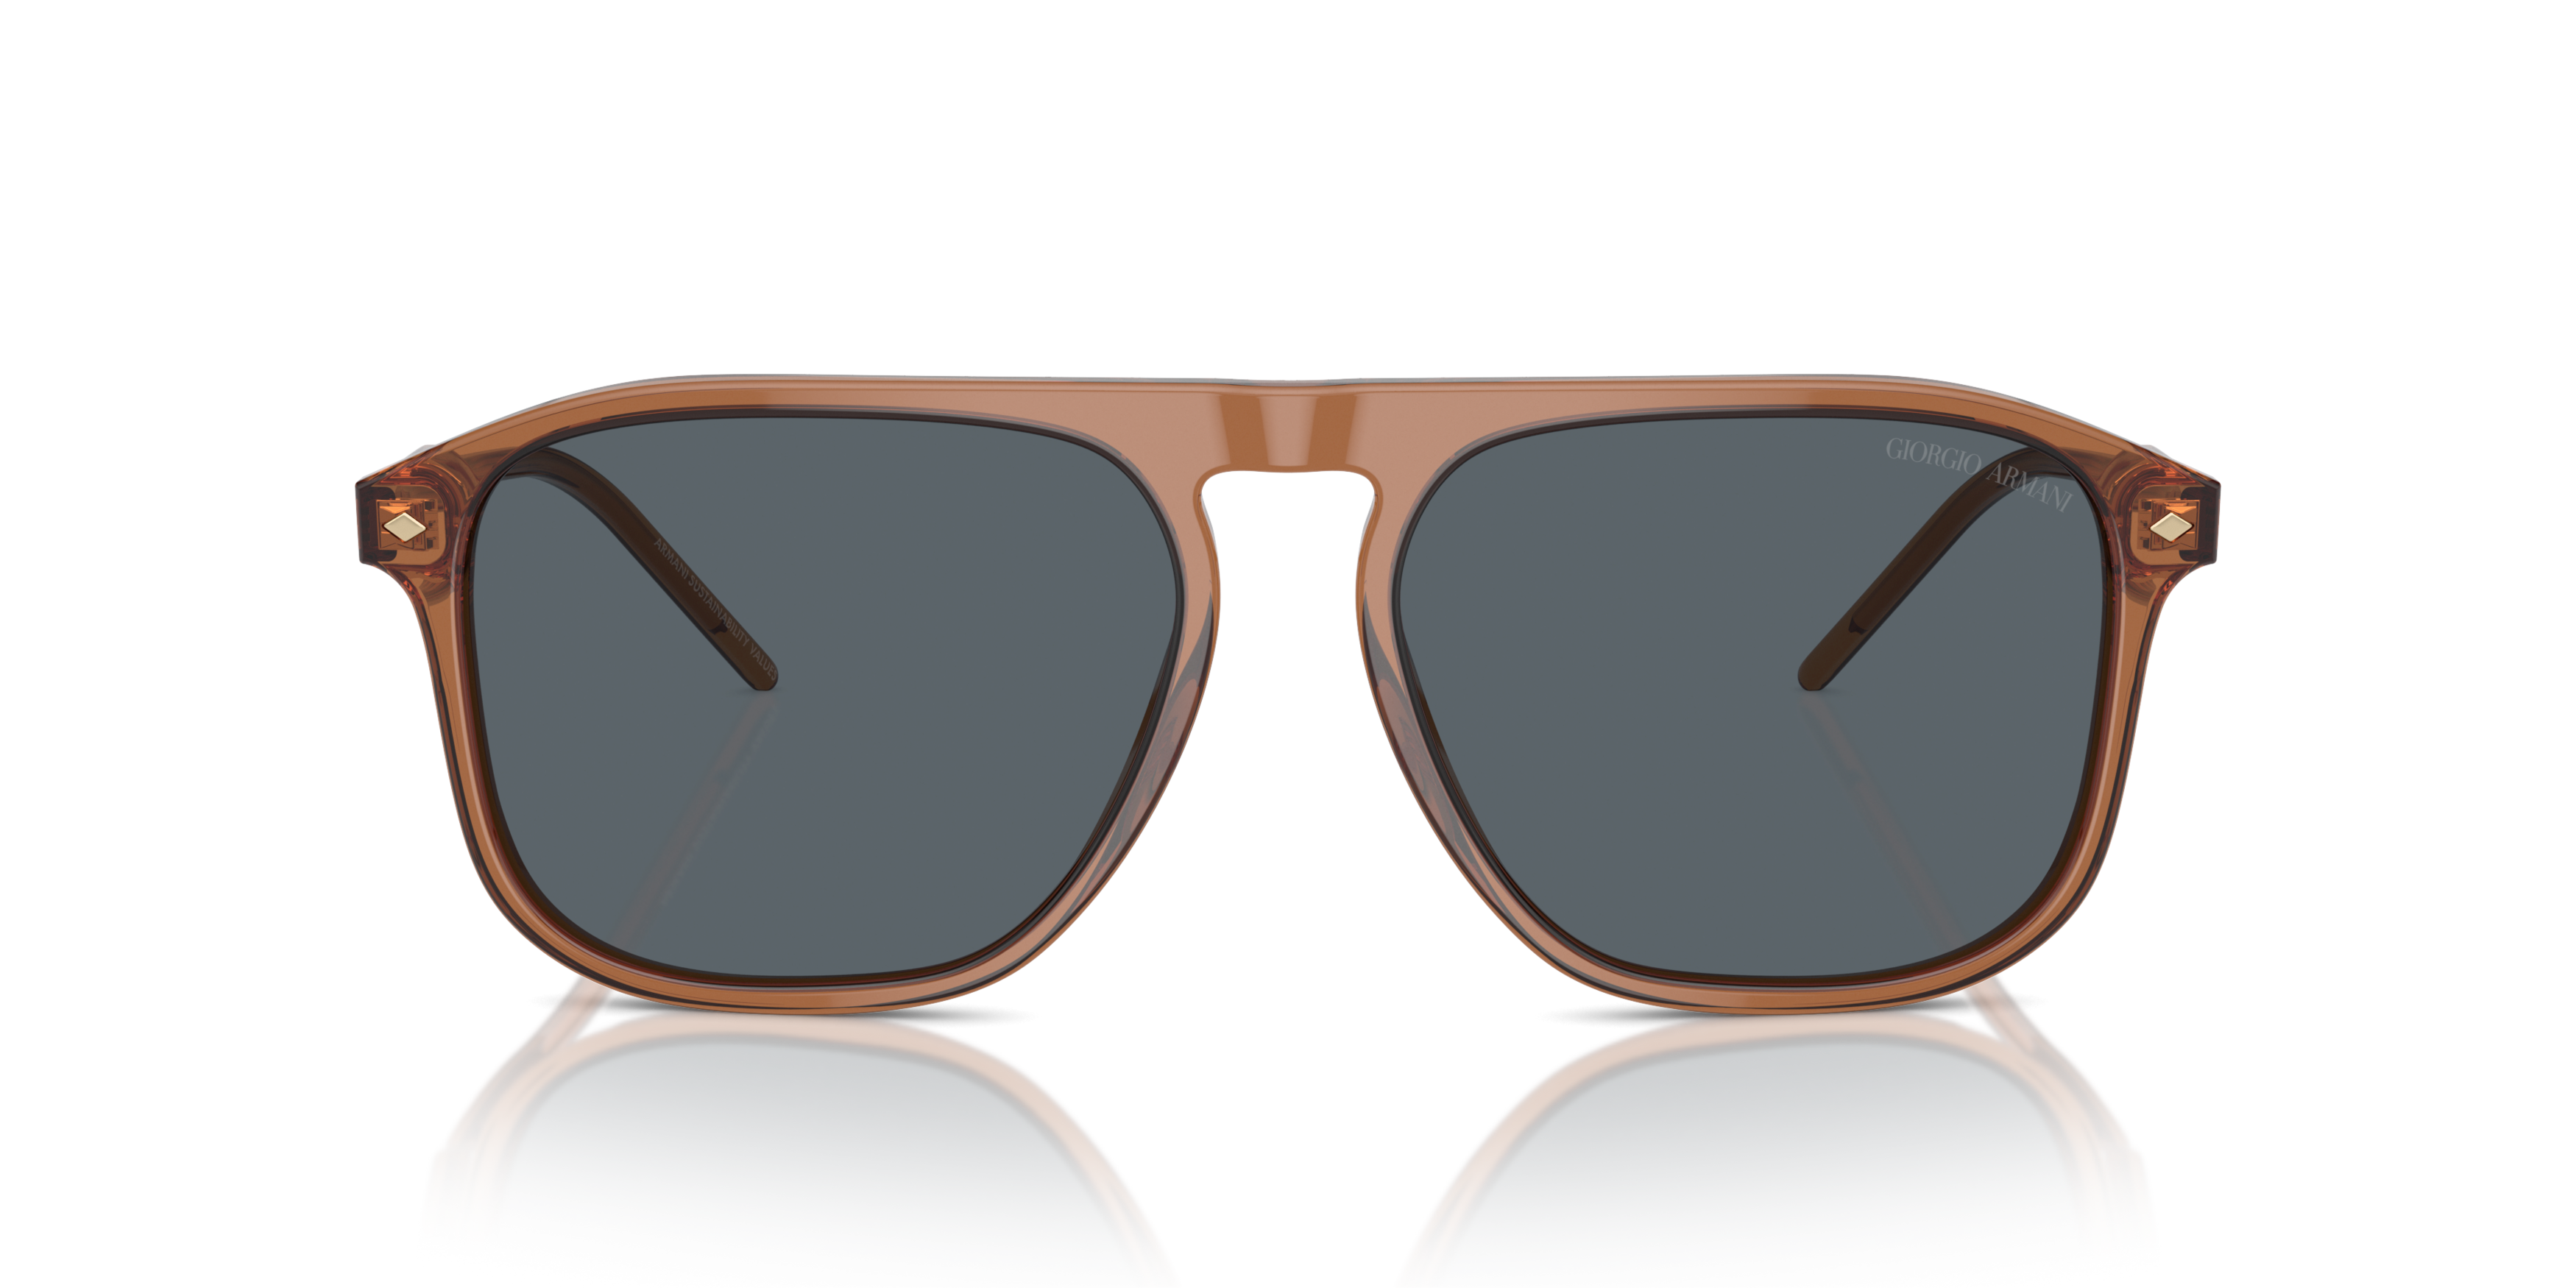 [products.image.front] Giorgio Armani AR 8212 Sunglasses